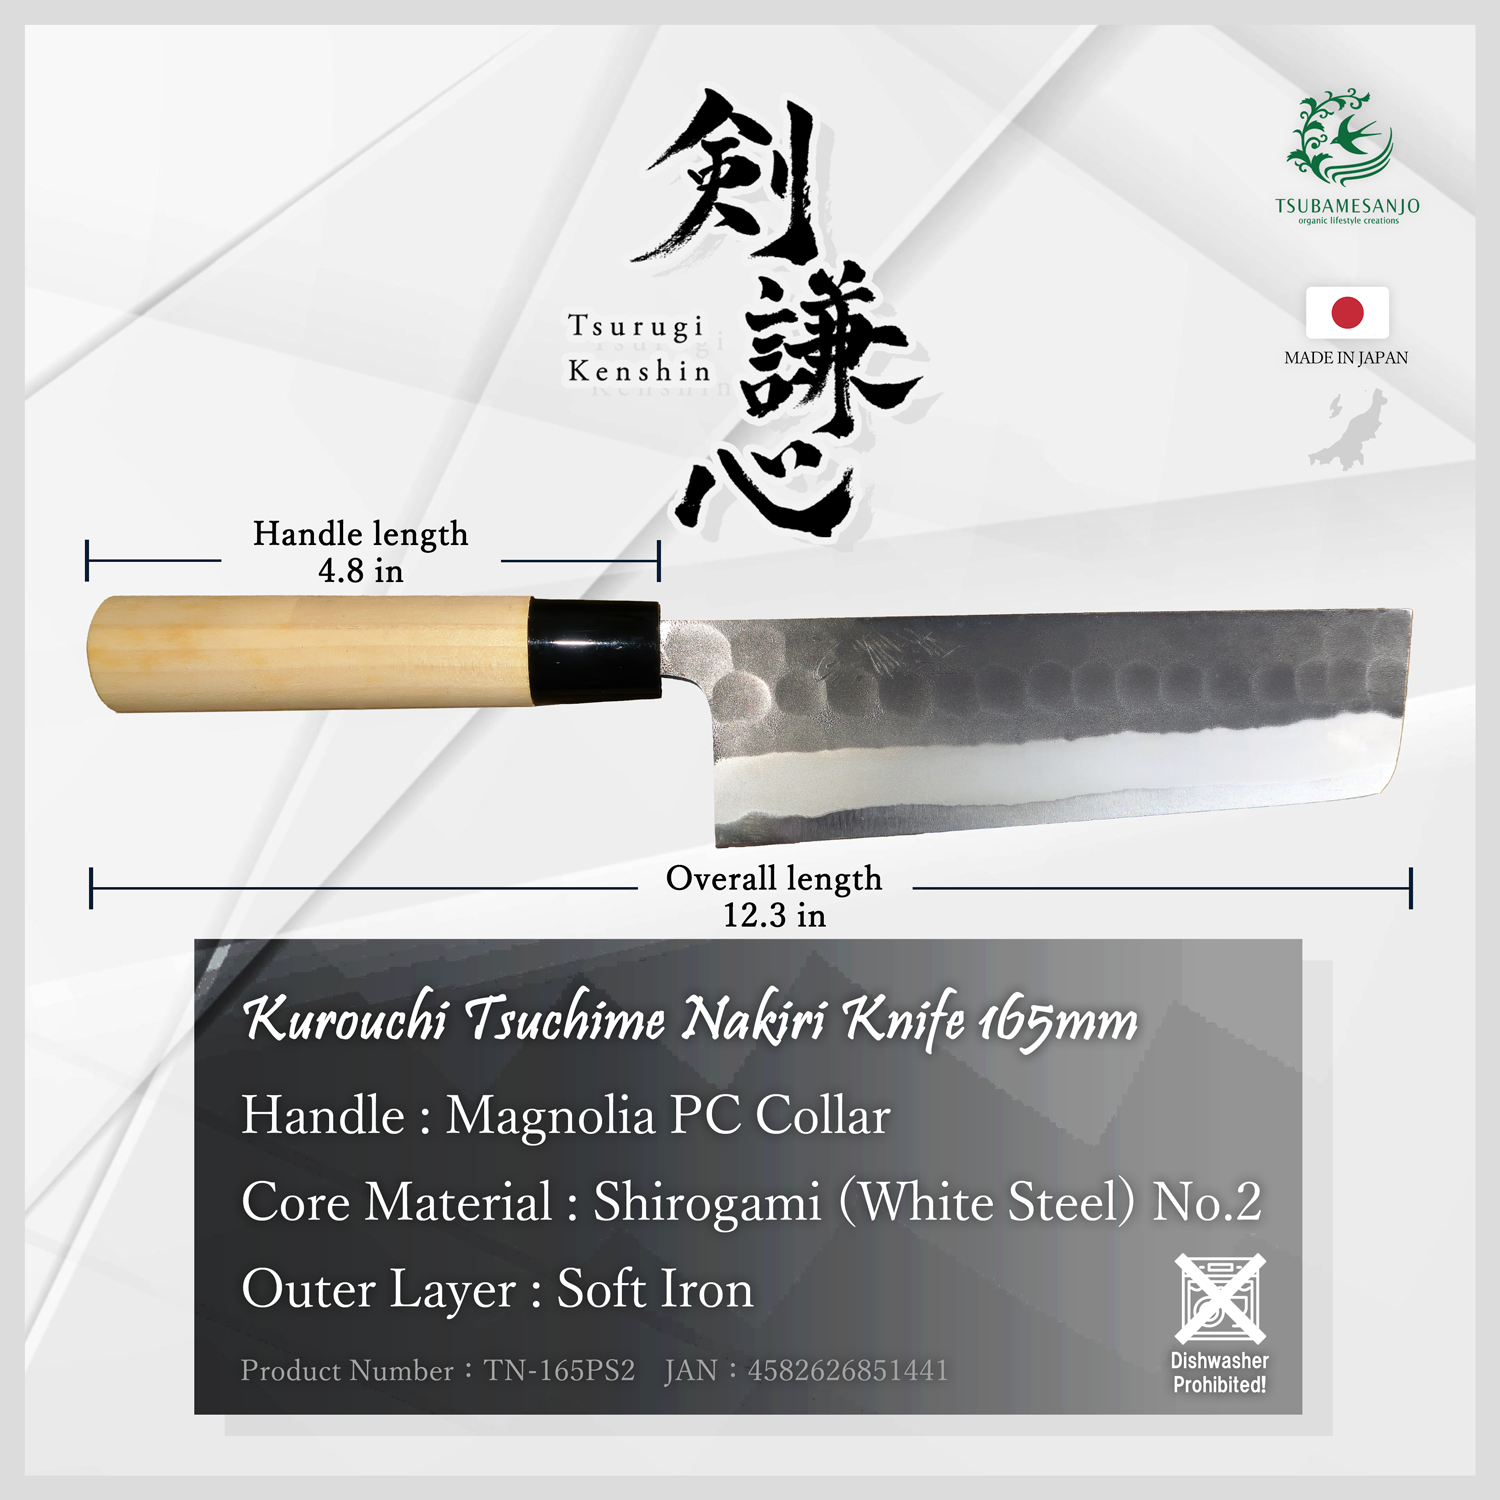 Tsurugi Kenshin Kurouchi Tsuchime Nakiri Knife 165mm